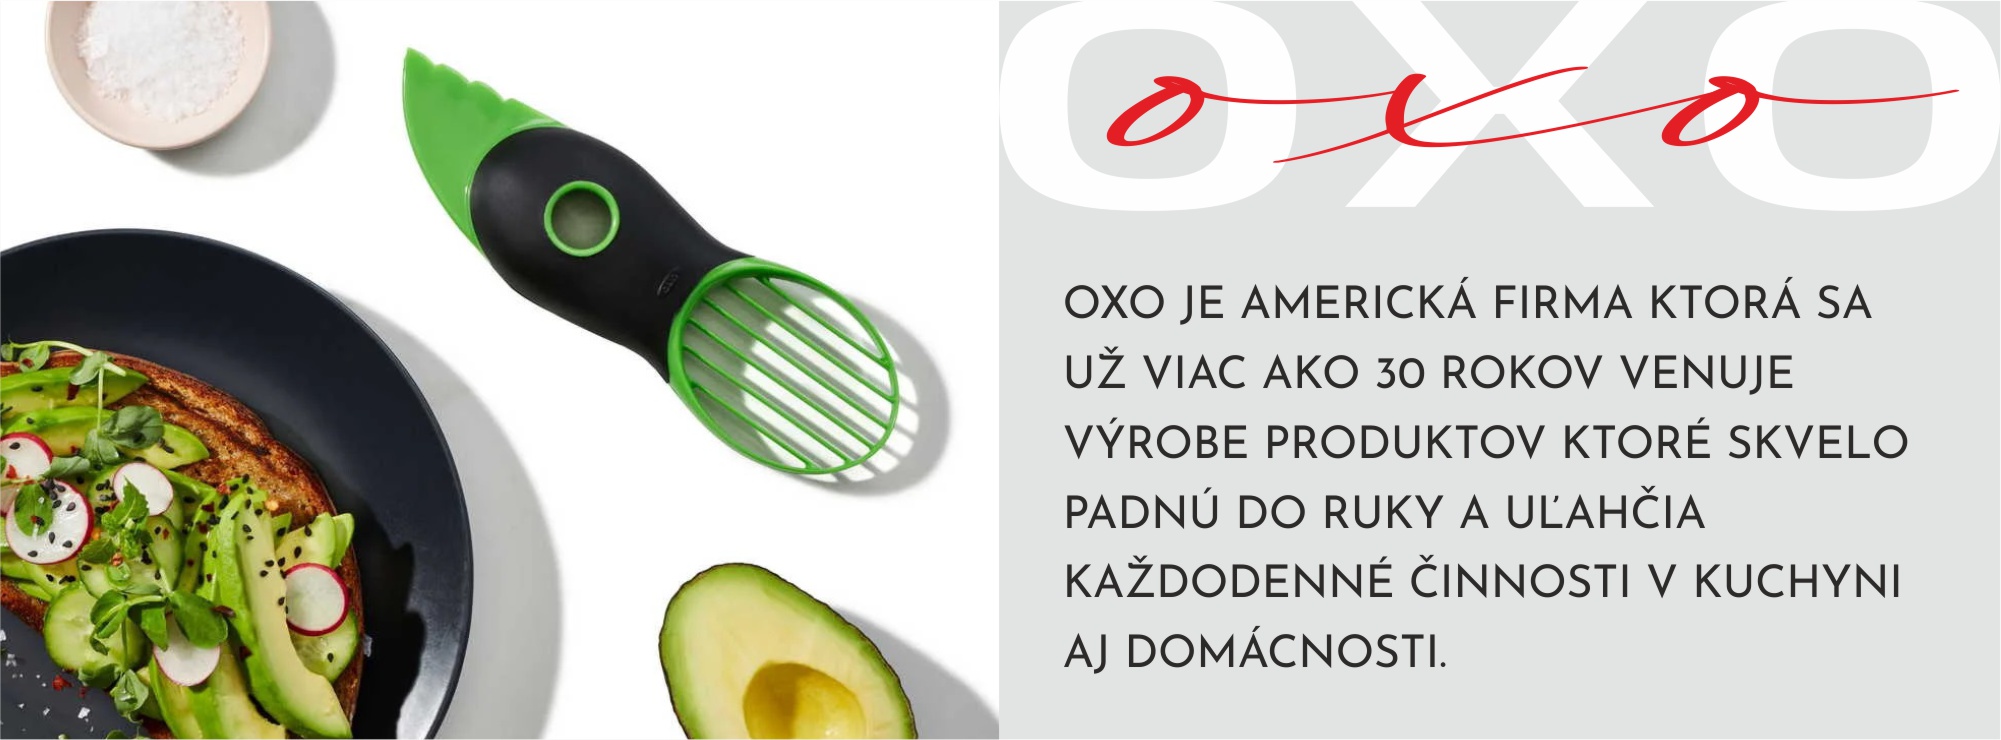 OXO-info-avokado